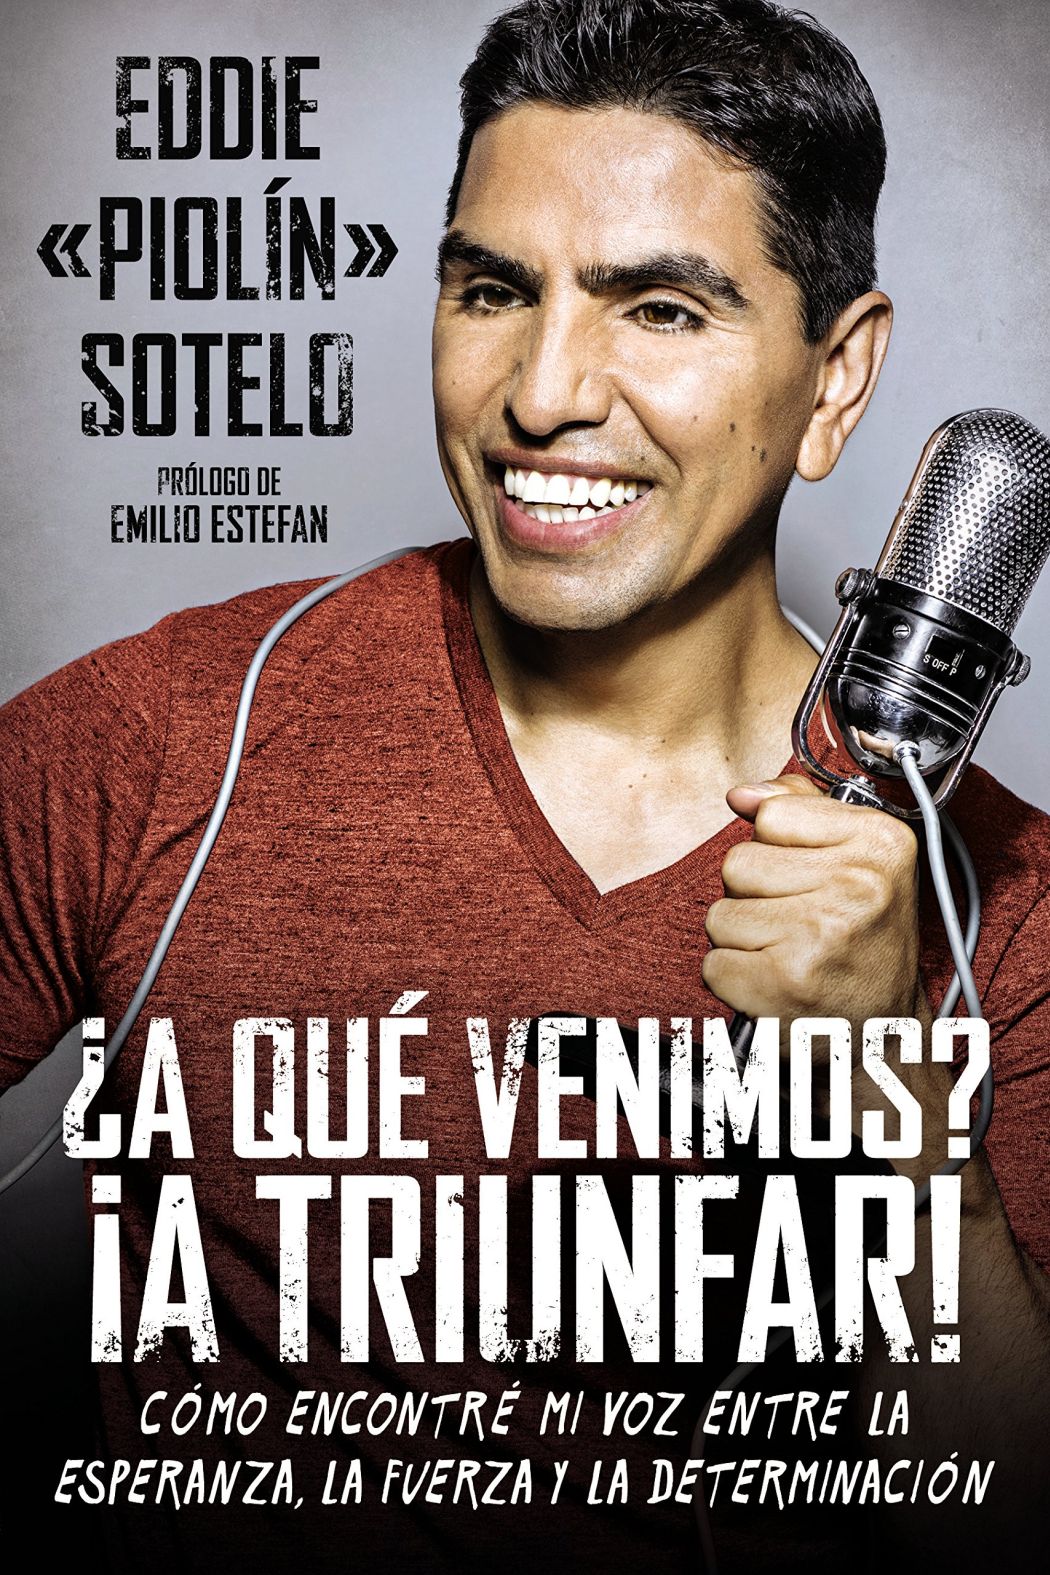 El "Show de Piolín" se estrenó en 40 estaciones de radio y fue acompañado de un libro sobre Eddie "Piolín" Sotelo. Imagen: Amazon